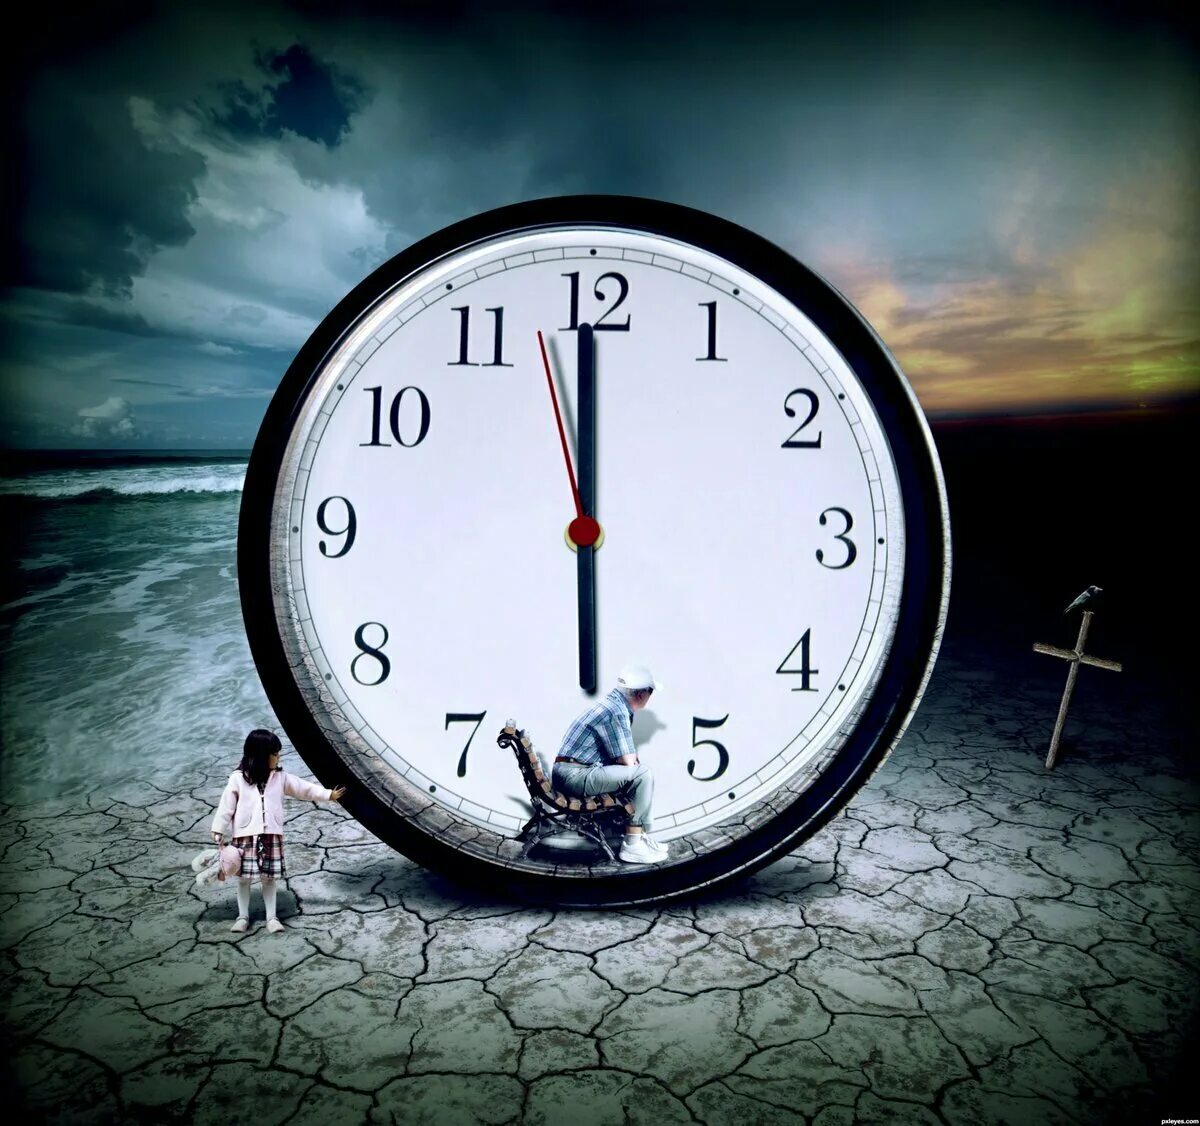 Быстро уходящее время. Часы бегут. А время уходит. Изображение времени. Медленные часы.